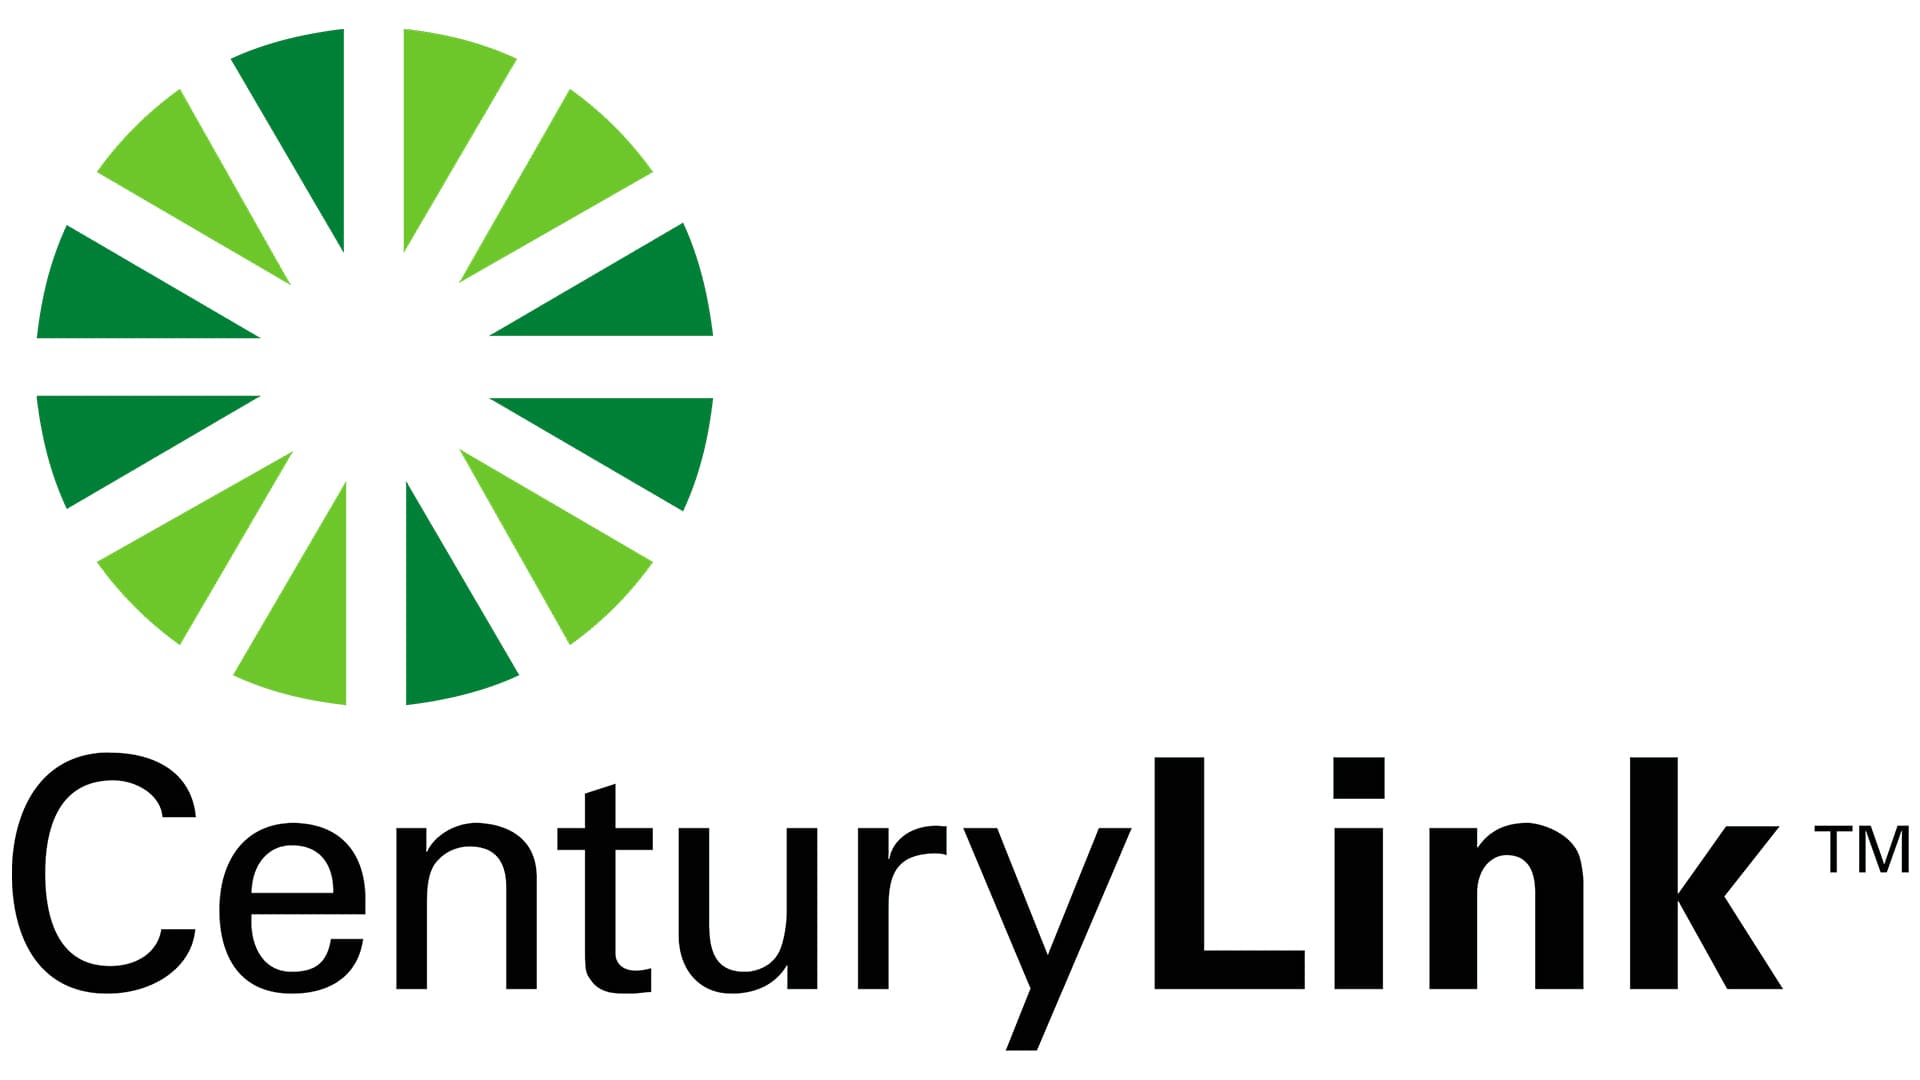 Download CenturyLink Logo in SVG Vector or PNG File Format - Logo.wine